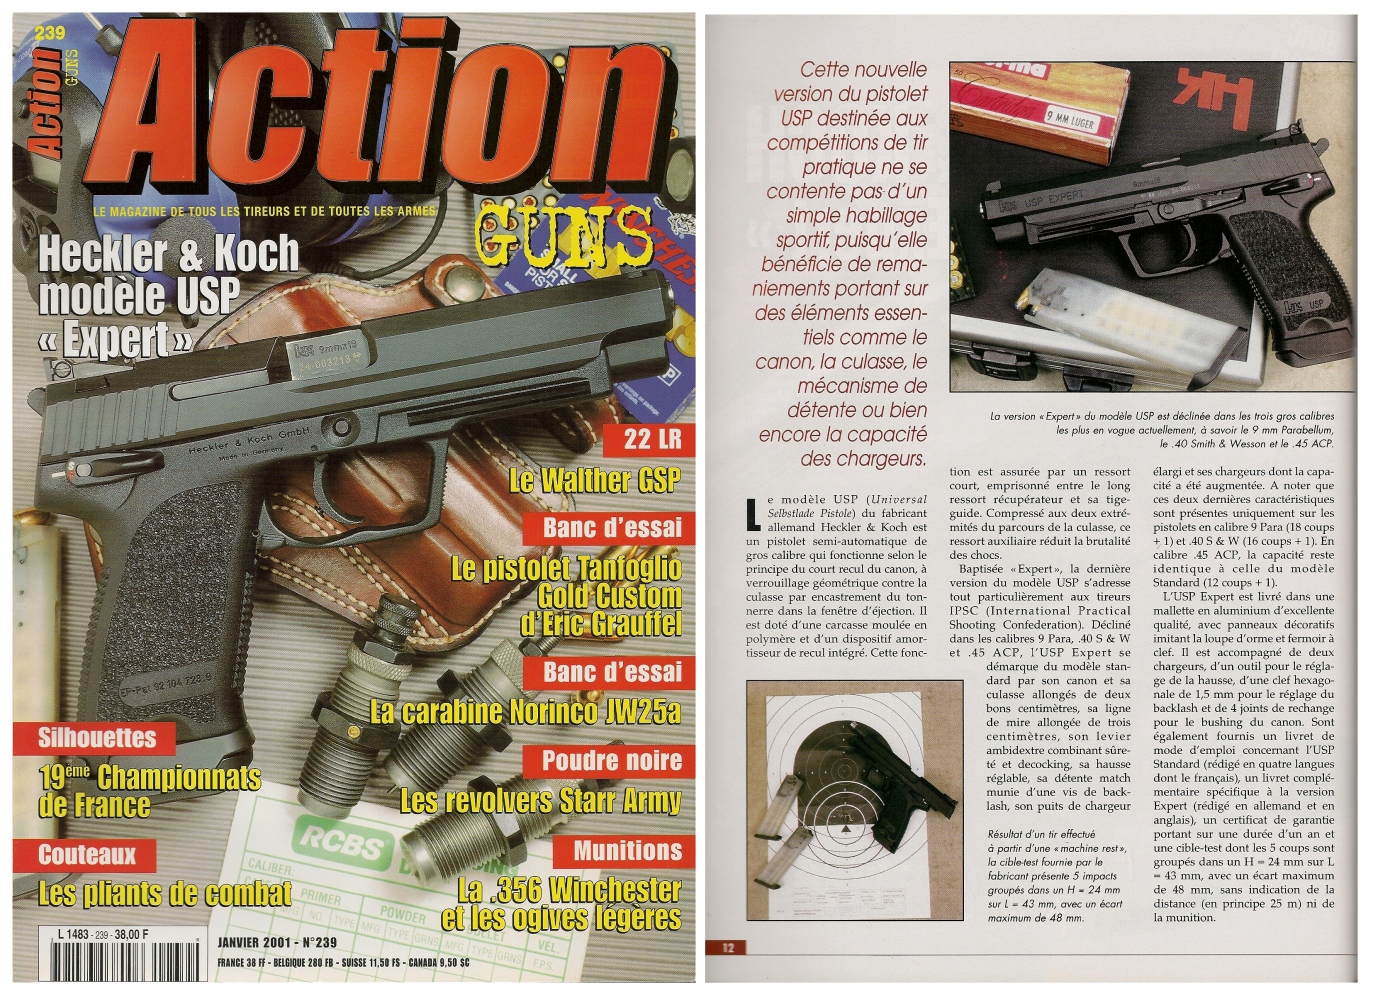 Le banc d'essai du pistolet HK USP Expert a été publié sur 7 pages dans le magazine Action Guns n° 239 (janvier 2001).